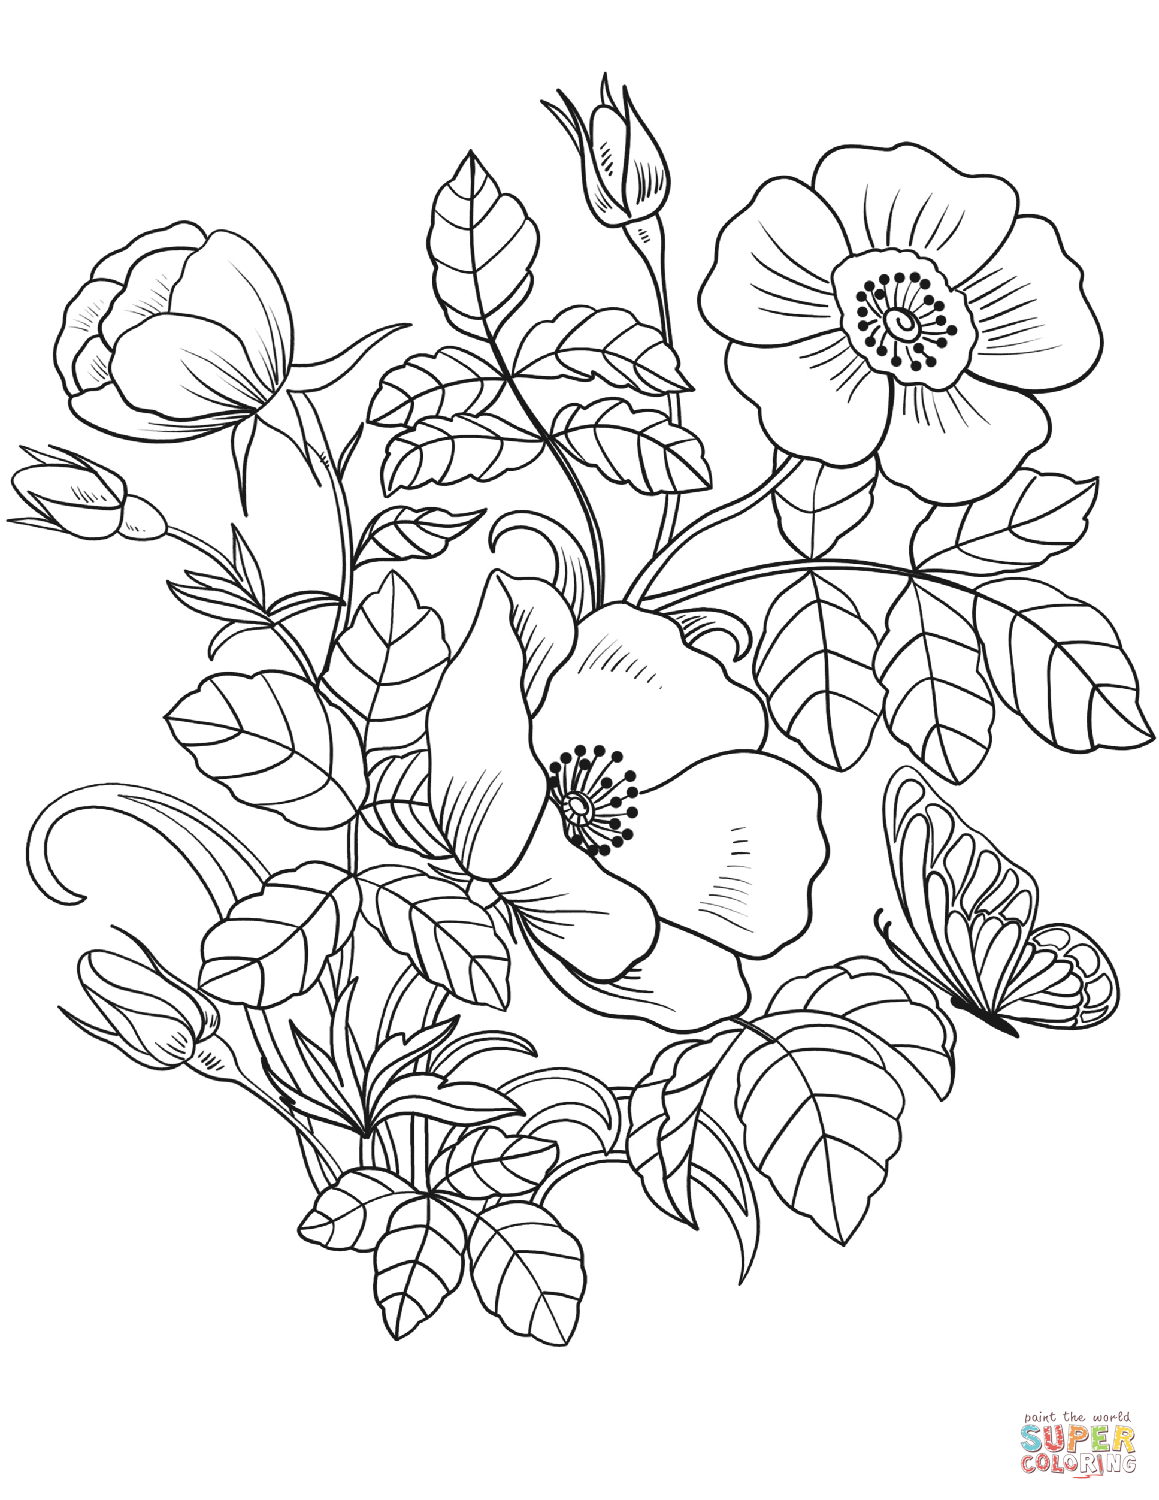 Dibujo de flores de primavera para colorear dibujos para colorear imprimir gratis